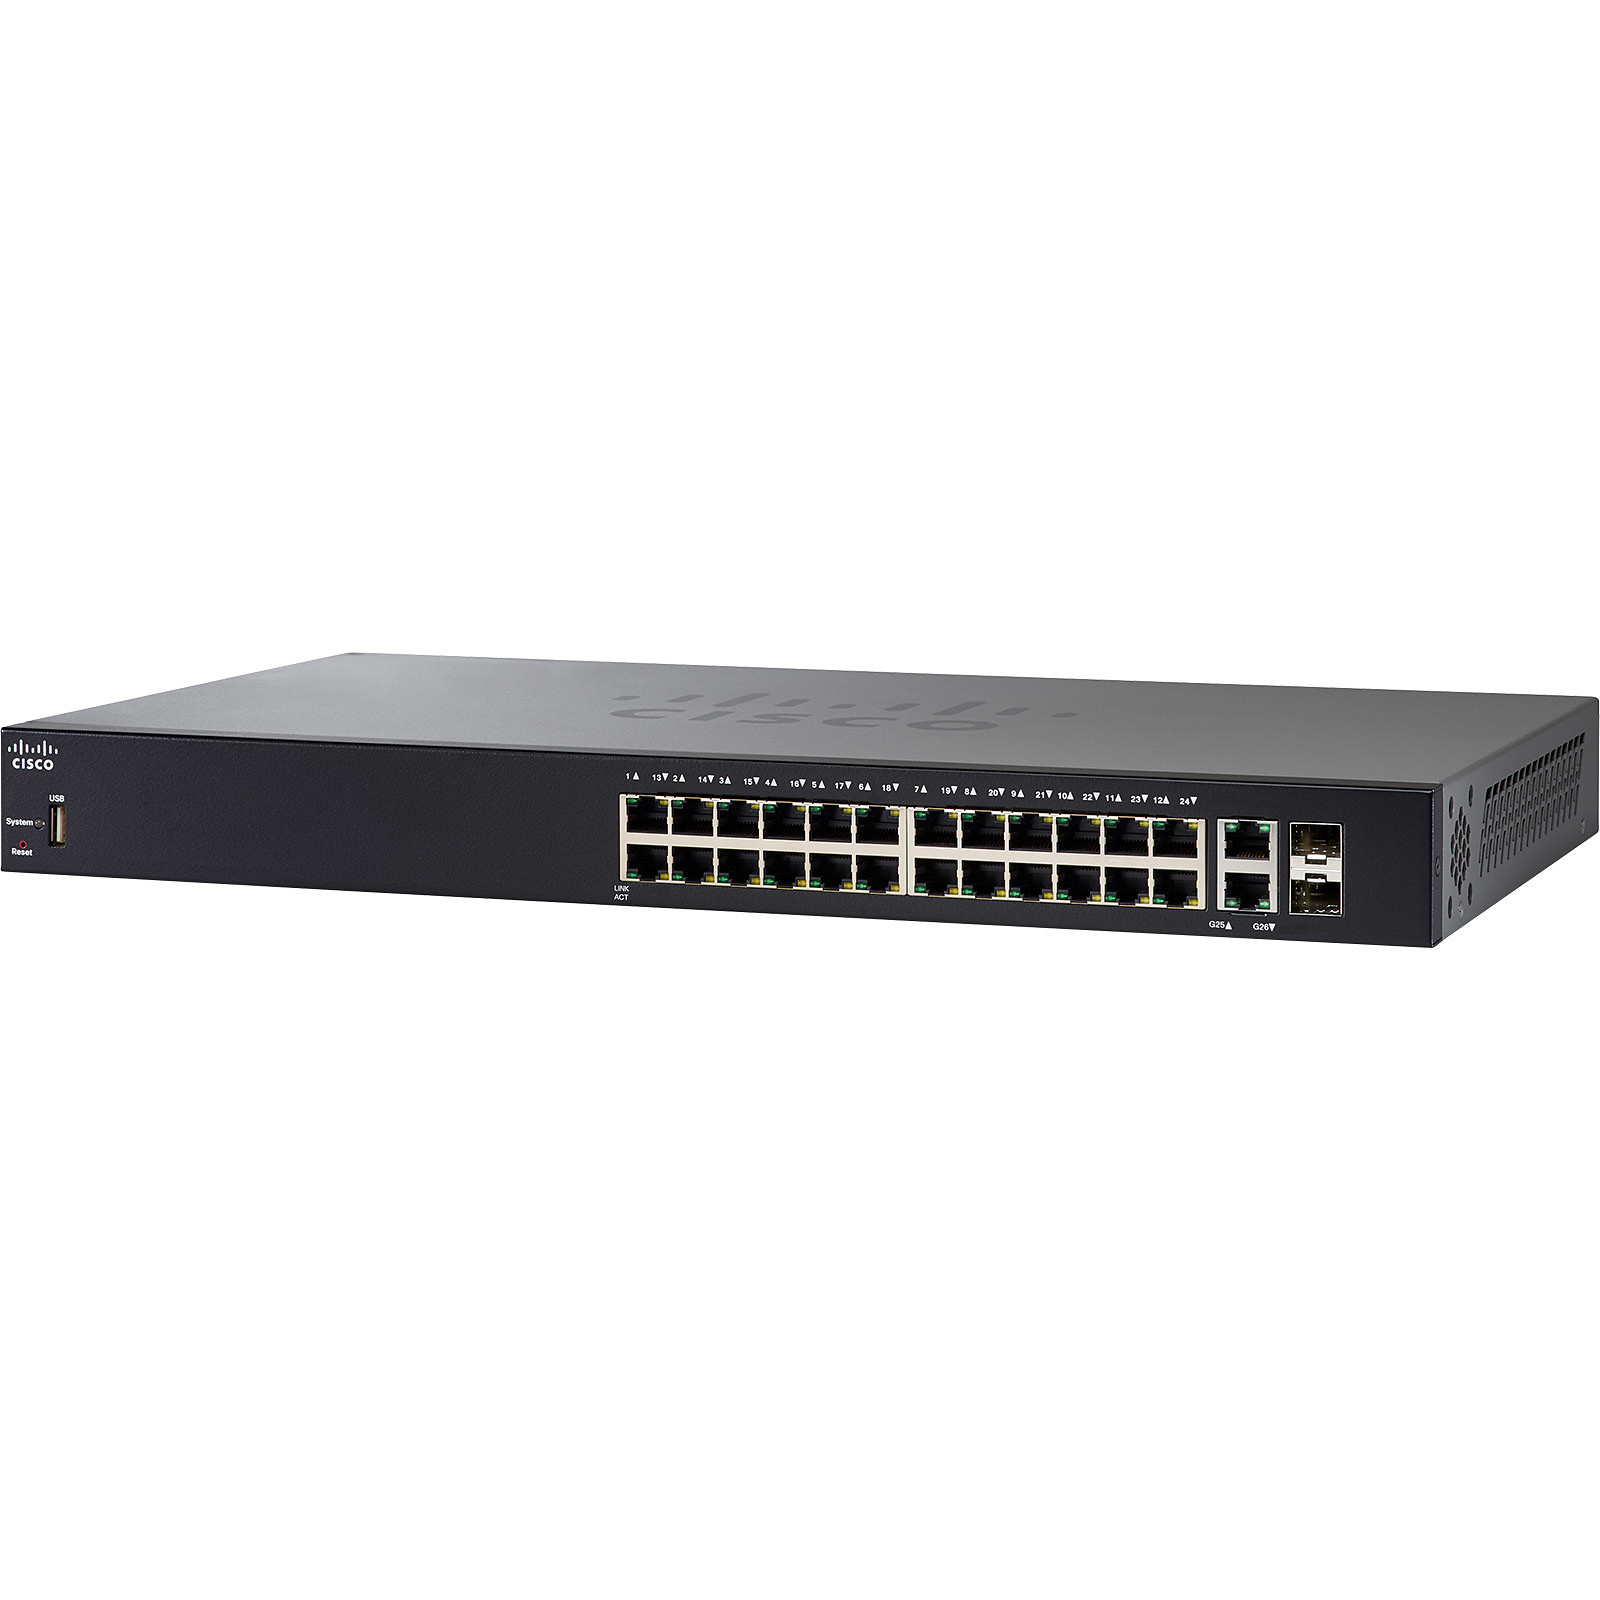 Cisco SG250X-24P - Switch Cisco Systems